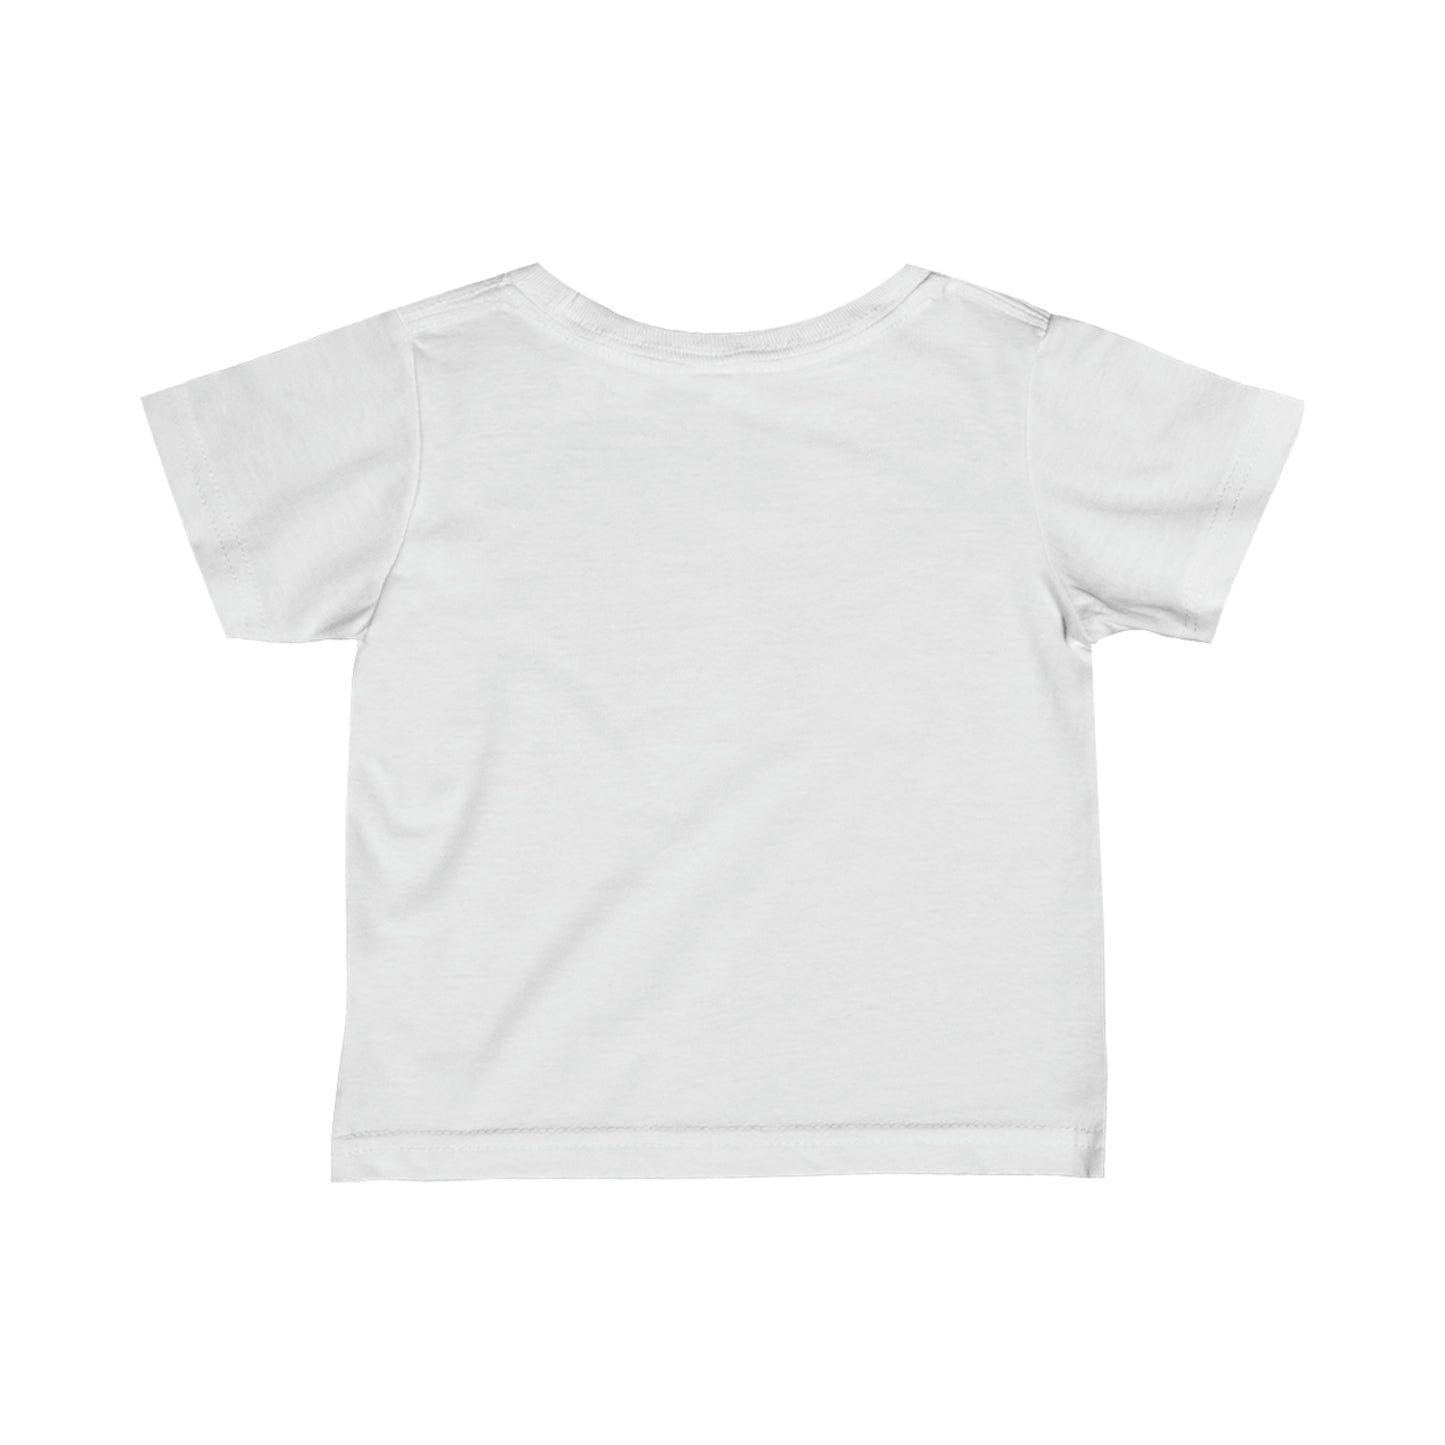 TODDLER ERA unisex print short-sleeved t-shirt for 6m-24m